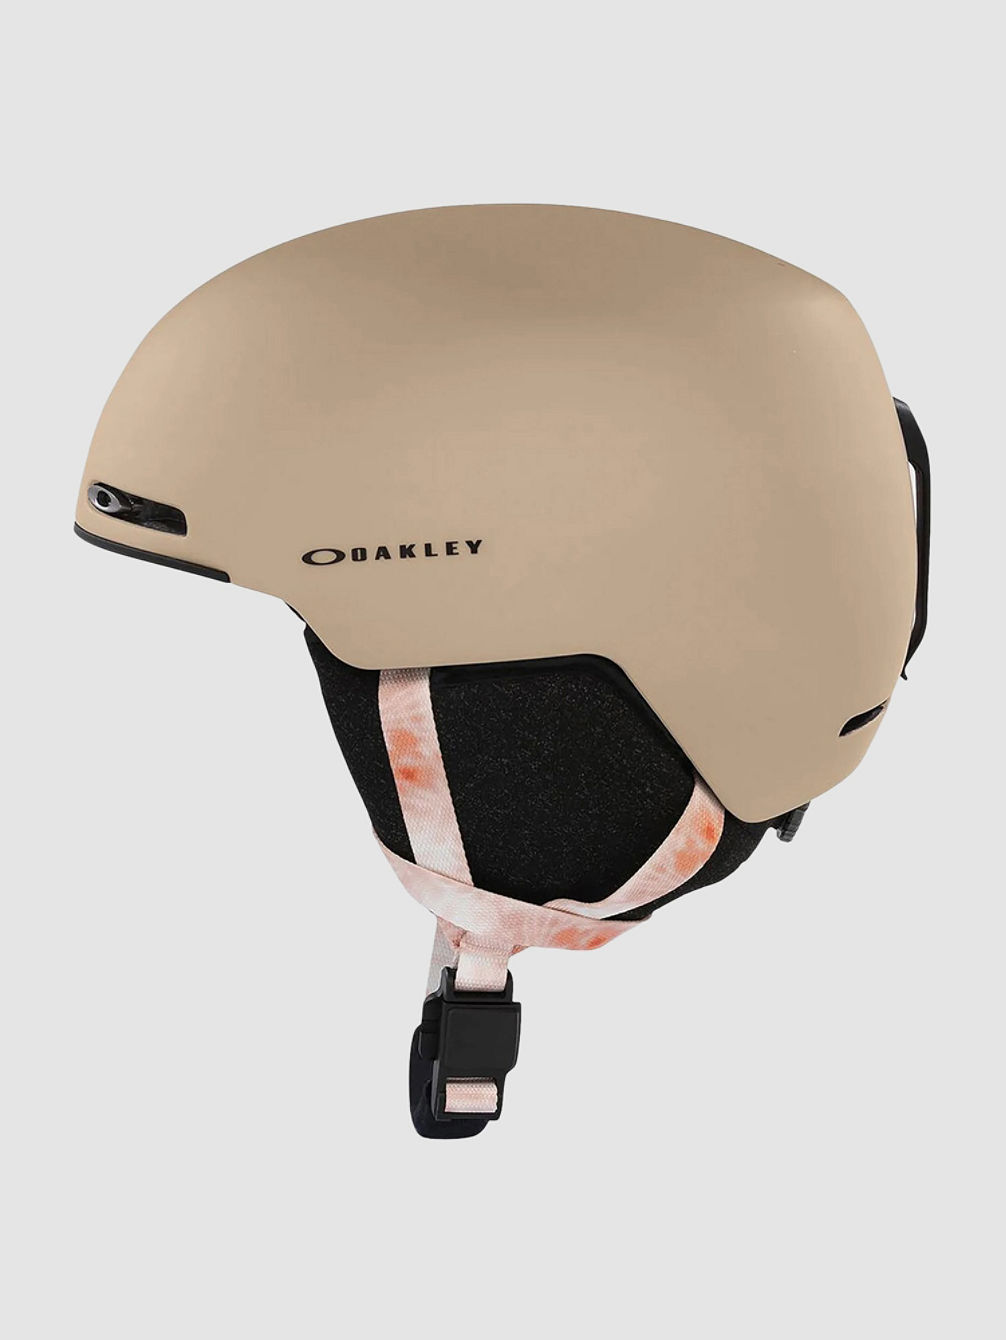 Mod1 Helm